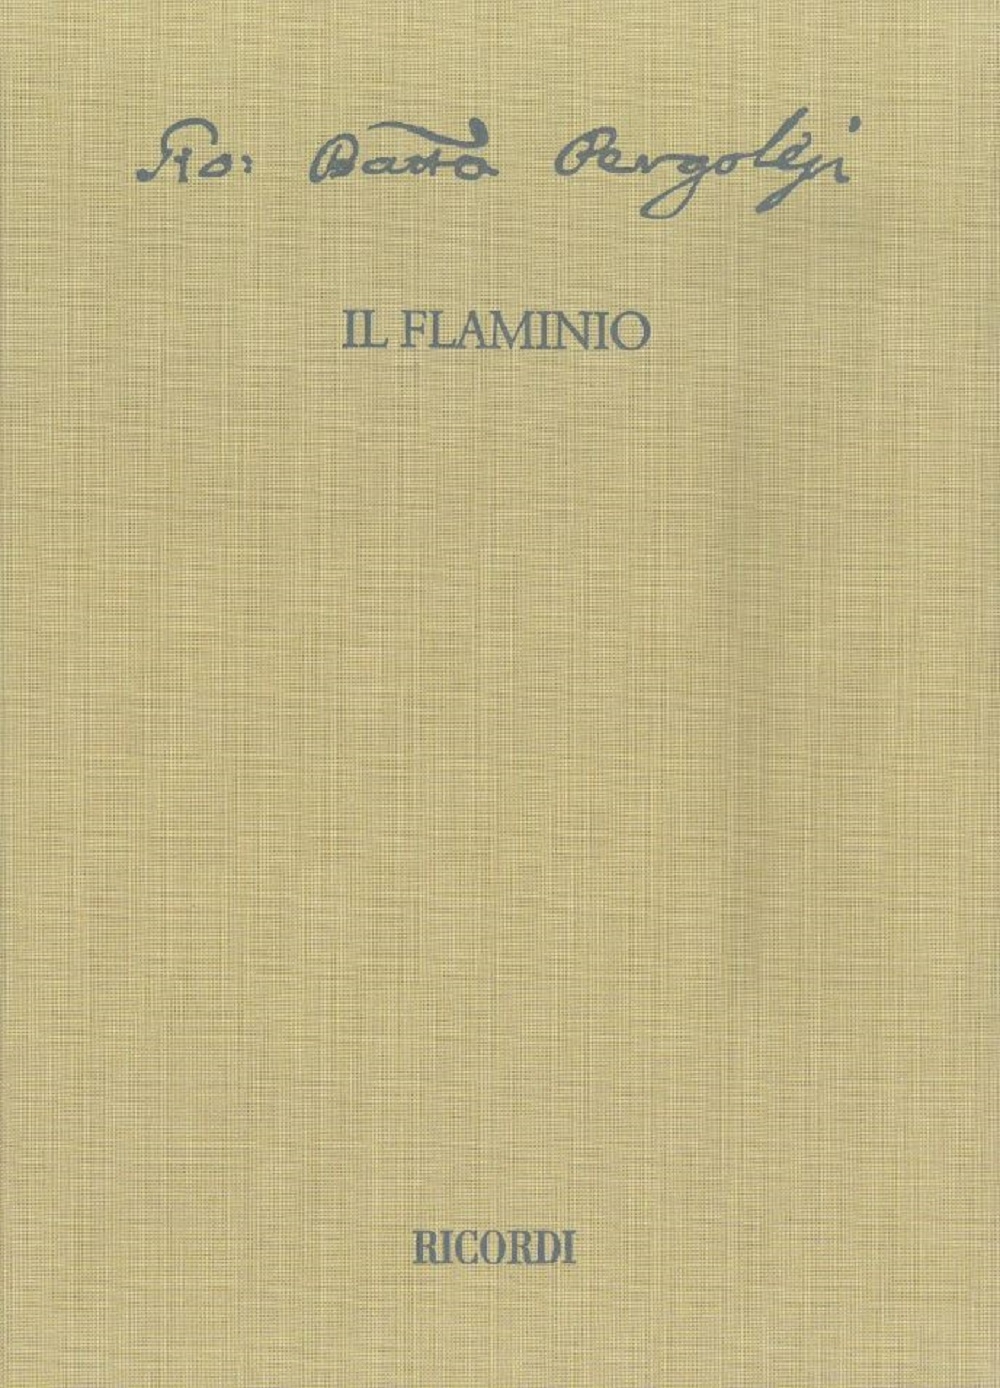 Giovanni Battista Pergolesi: Il Flaminio: Orchestra: Score